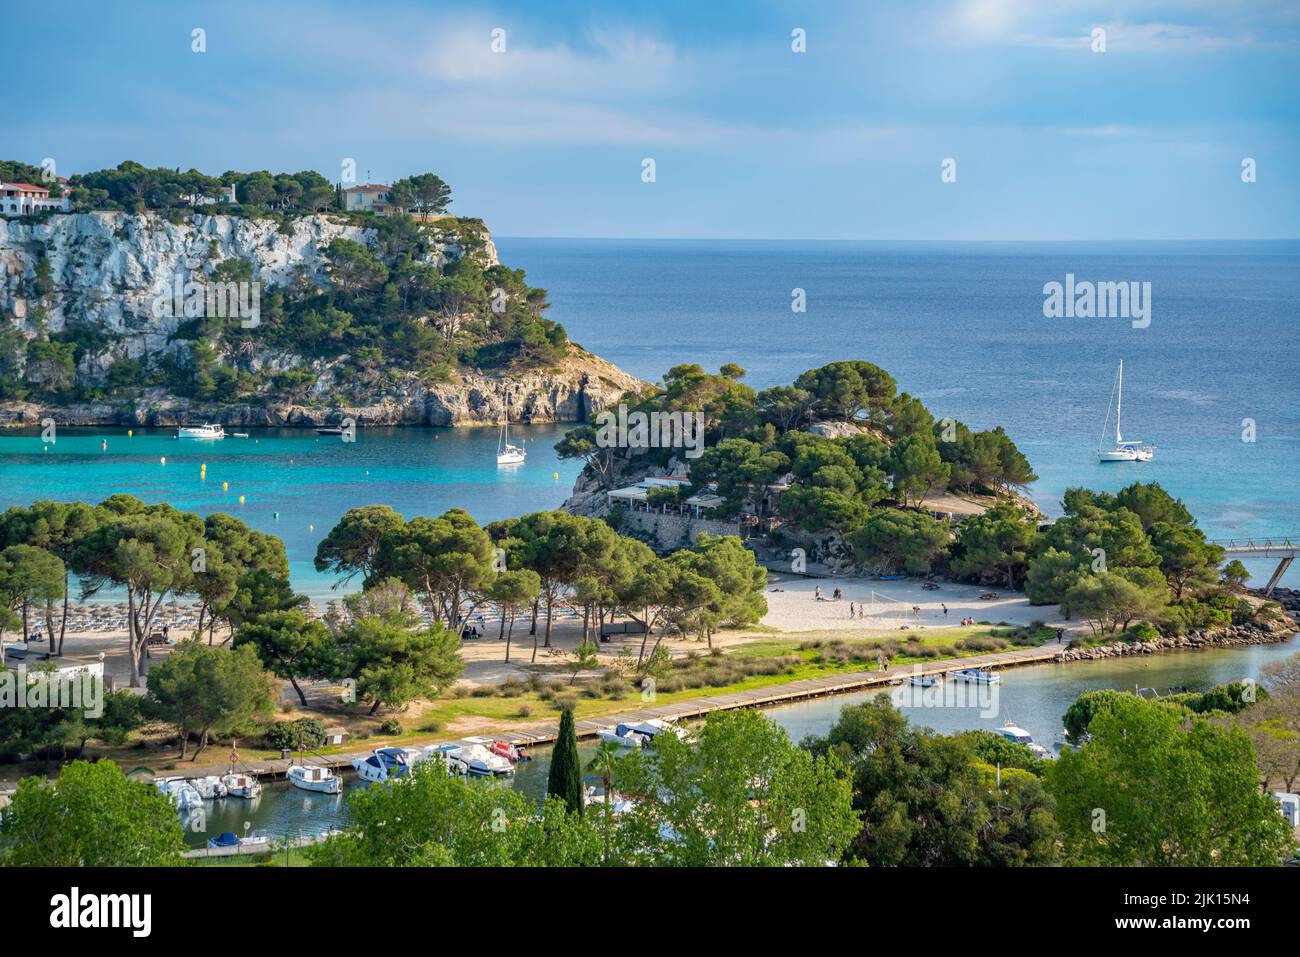 Vista de hoteles con vistas al puerto deportivo y al mar Mediterráneo en Cala Galdana, Cala Galdana, Menorca, Islas Baleares, España, Mediterráneo, Europa Foto de stock